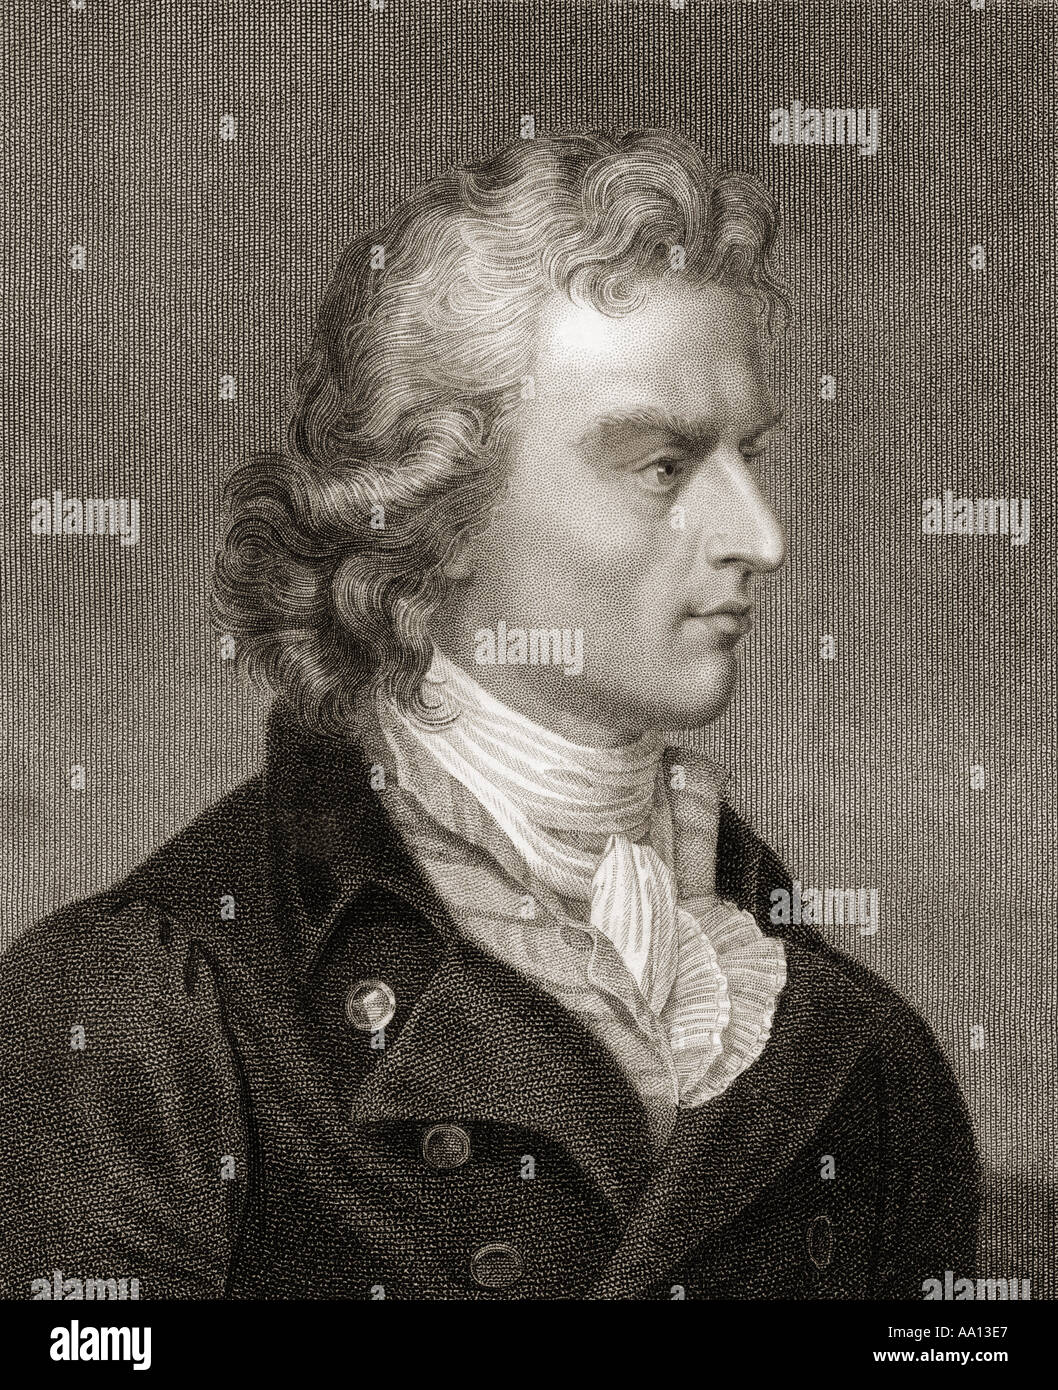 Johann Christoph Friedrich von Schiller, 1759 - 1805. Deutsche Dichter, Philosoph, Arzt, Historiker und Dramatiker. Stockfoto